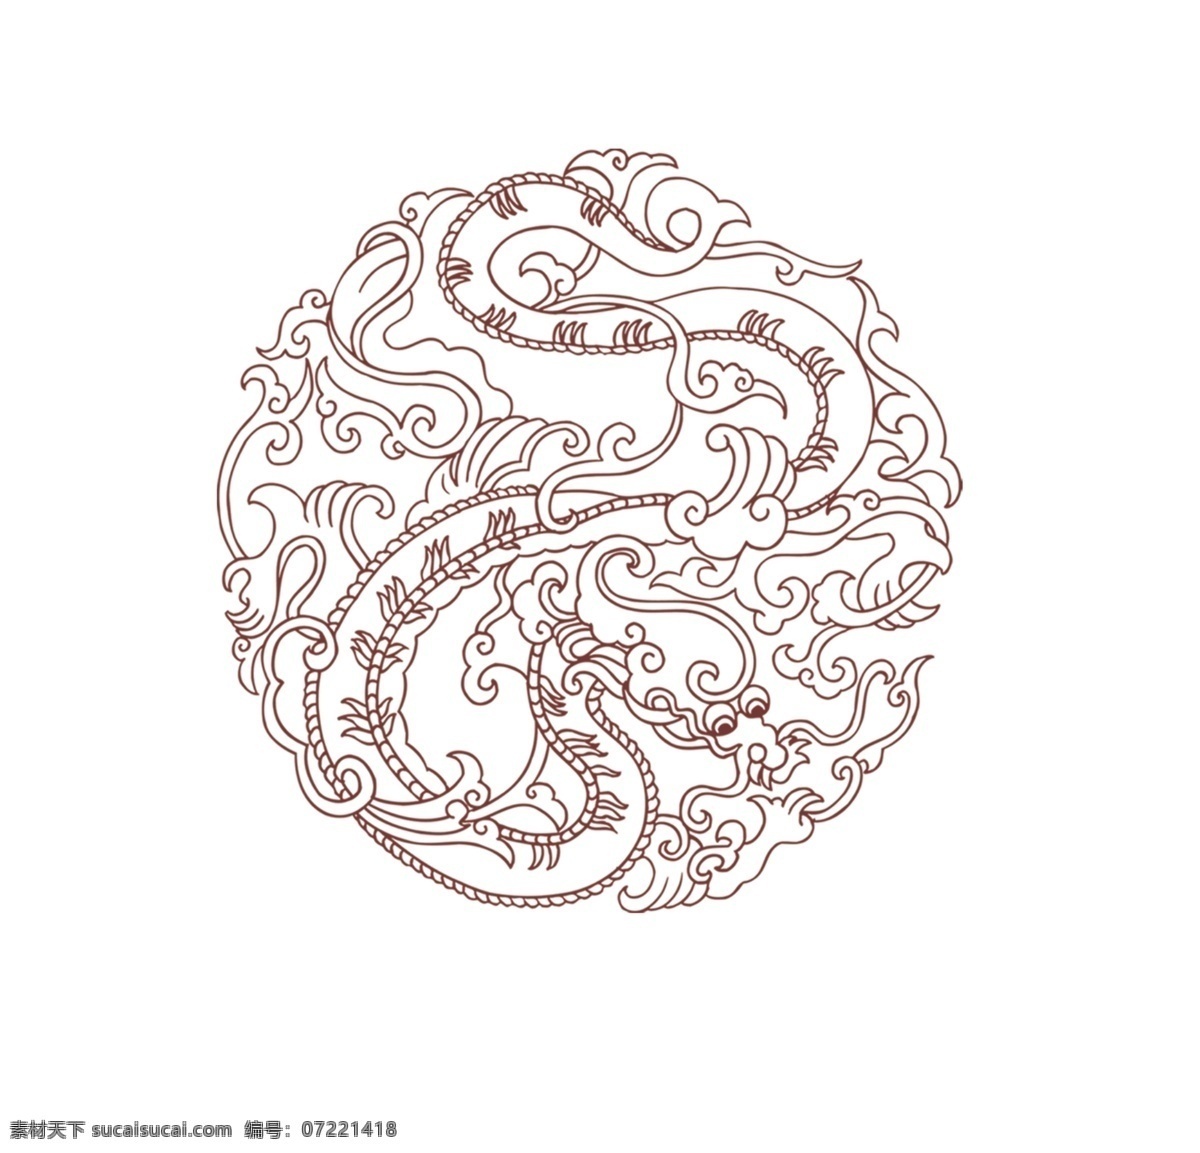 龙纹 底花纹 底纹 生肖 图藤 古代 线条 文化艺术 传统文化